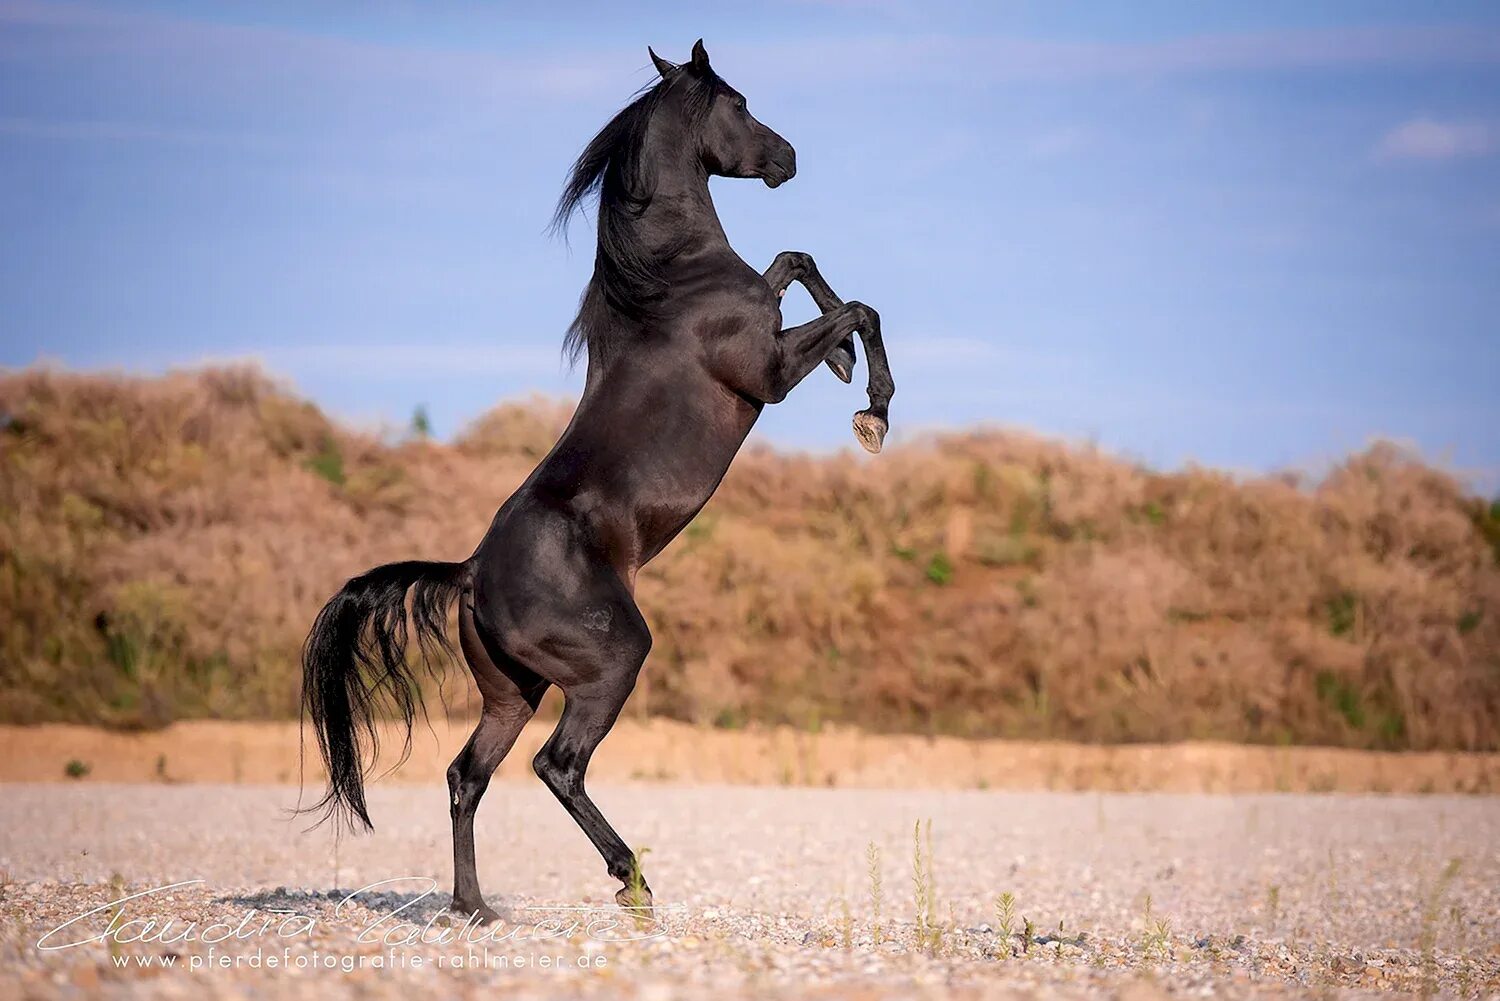 Найти арабский скакун. Лошадь арабский скакун Мустанг. Лошадь Мустанг иноходец. Мустанг черный арабский скакун. Арабские скакуны Мустанги.